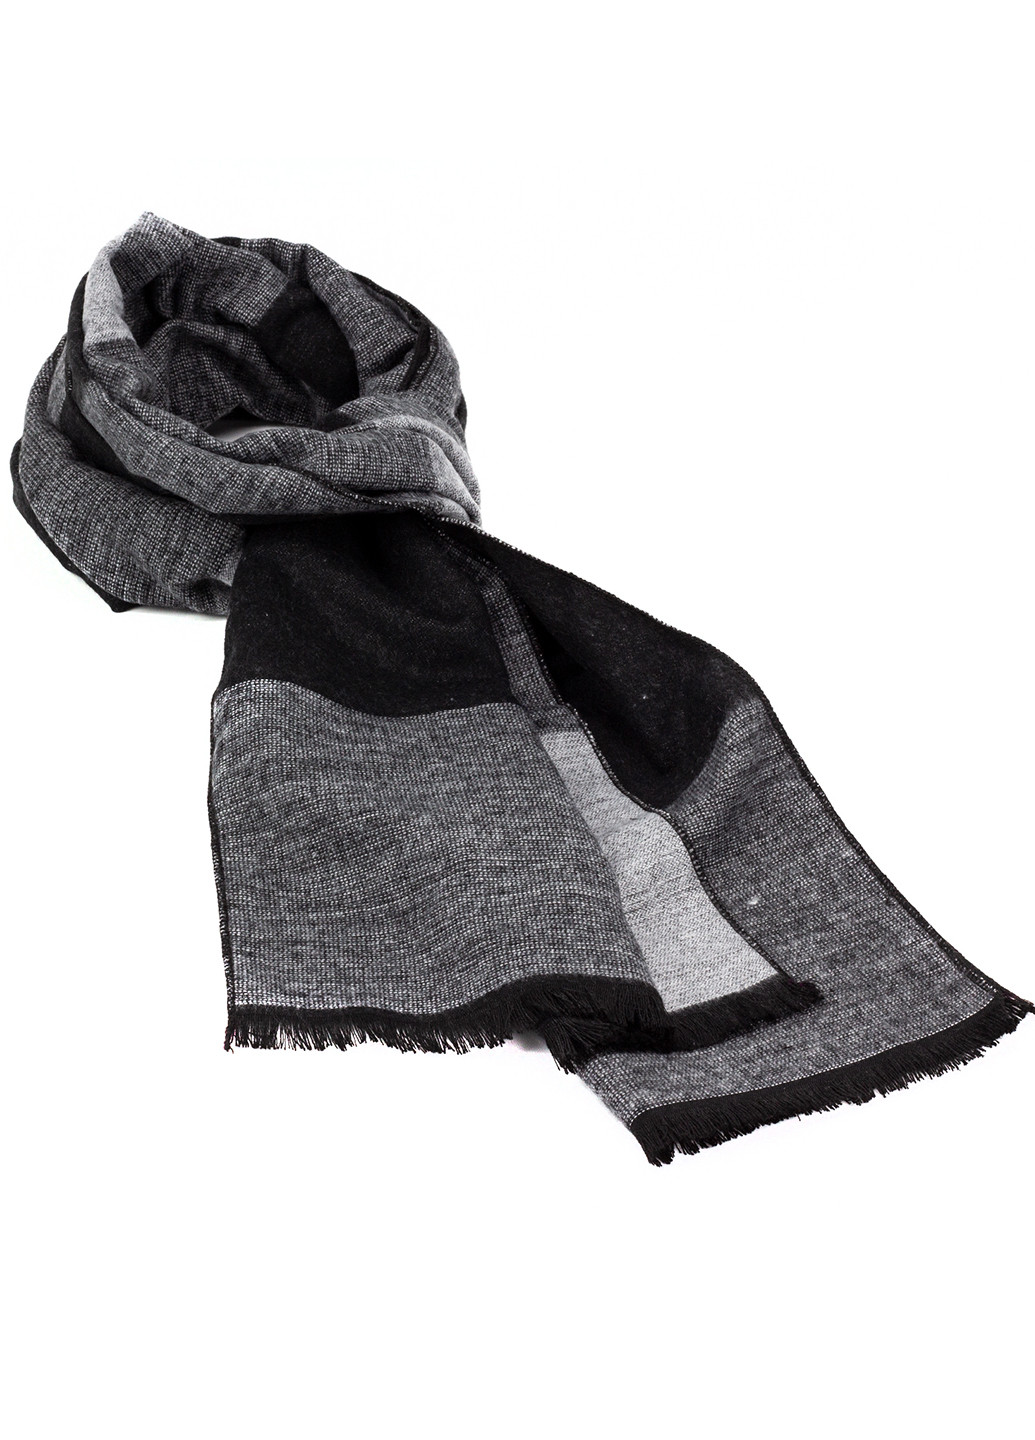 Чоловічий шарф у клітку чорний з сірим LuxWear ms2011 (251712967)